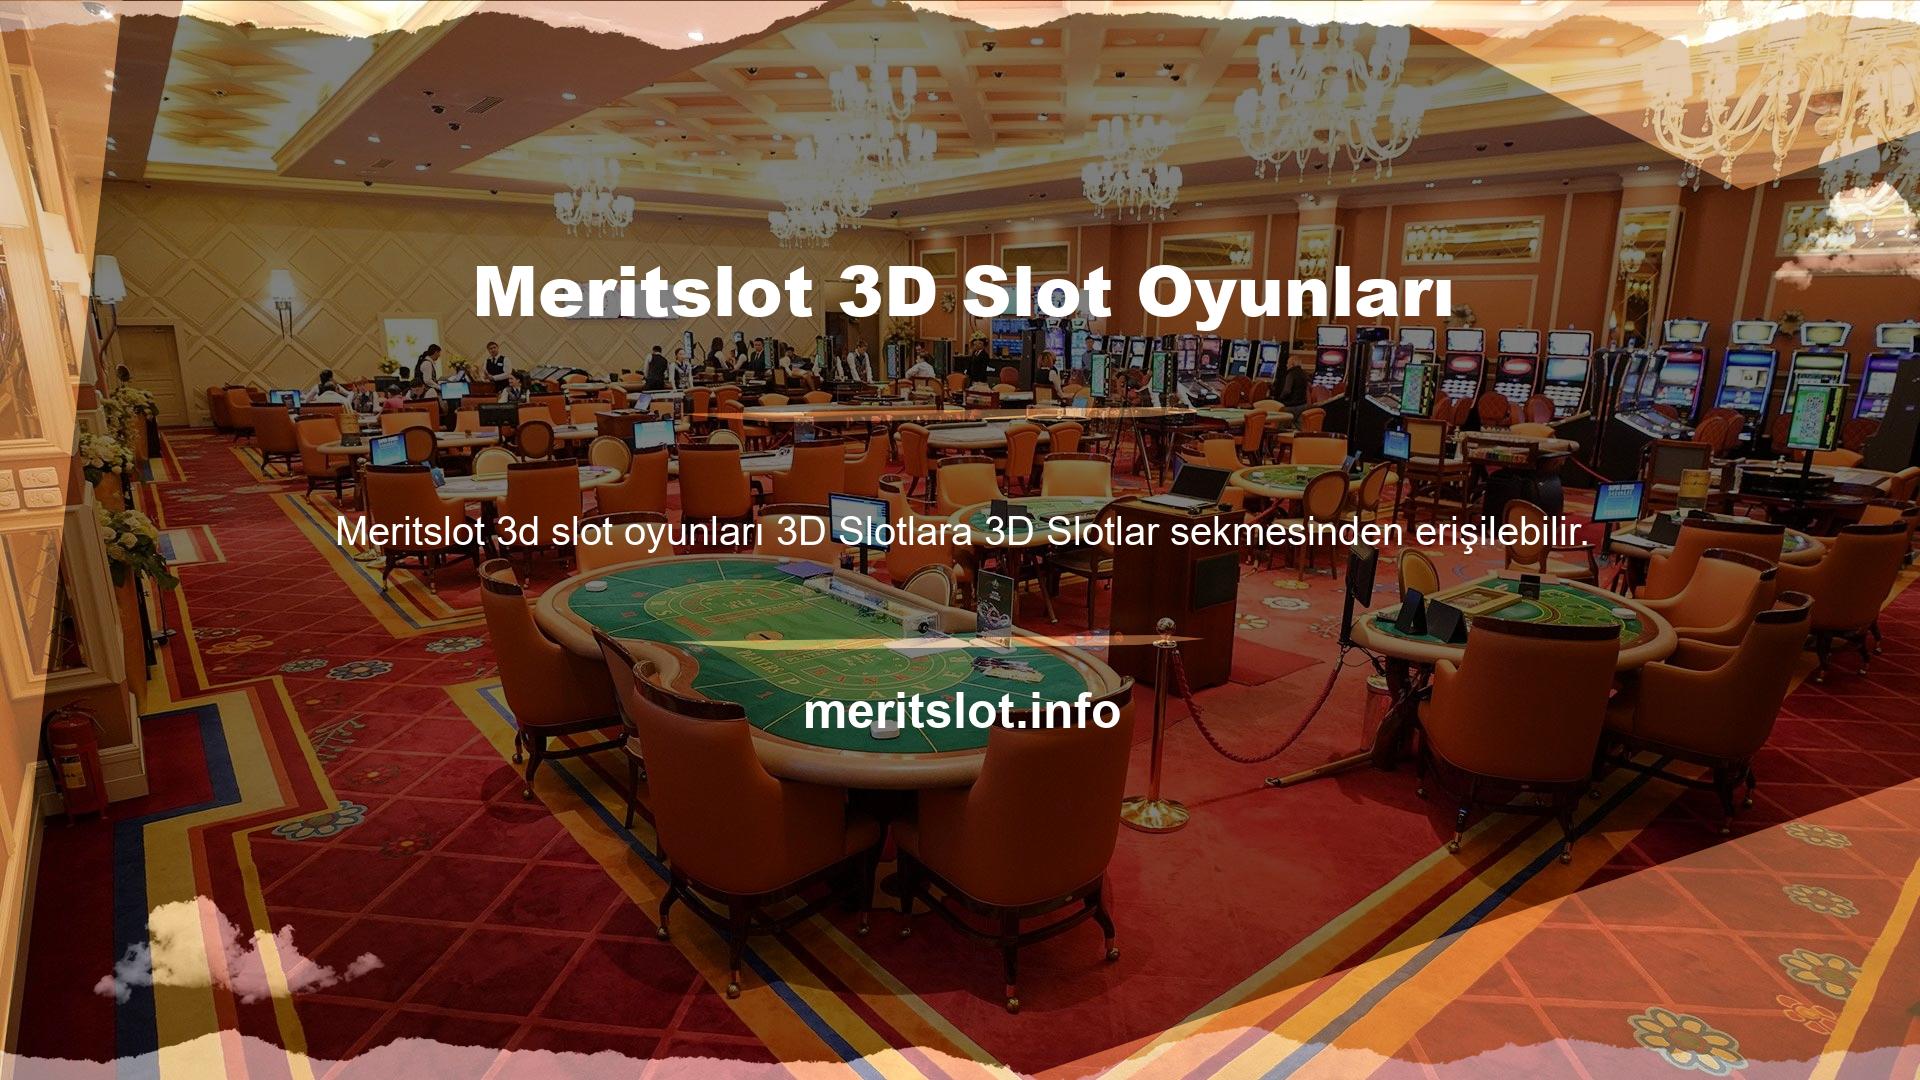 Meritslot casino oyunları çeşitli 3D oyunlar içerir